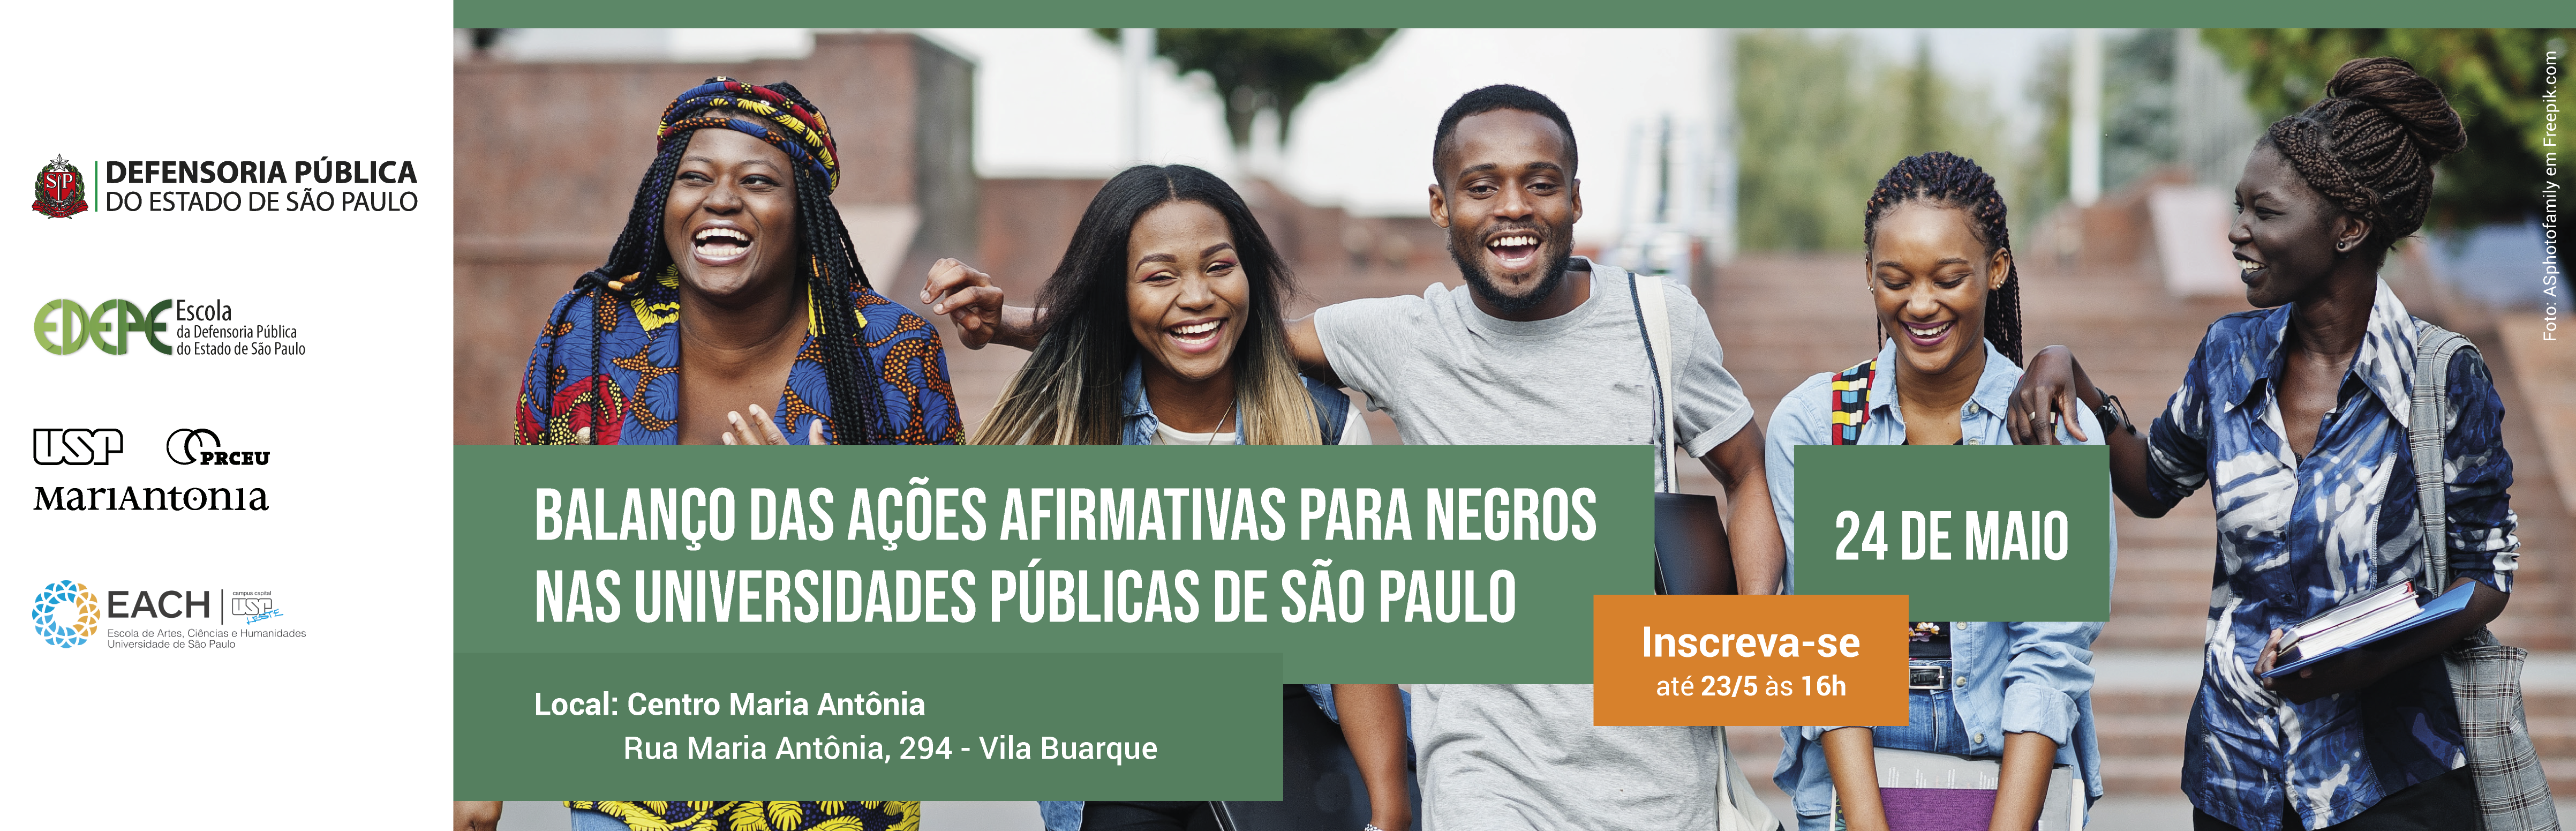 Seminário “Balanço das ações afirmativas para negros nas universidades públicas de São Paulo” 